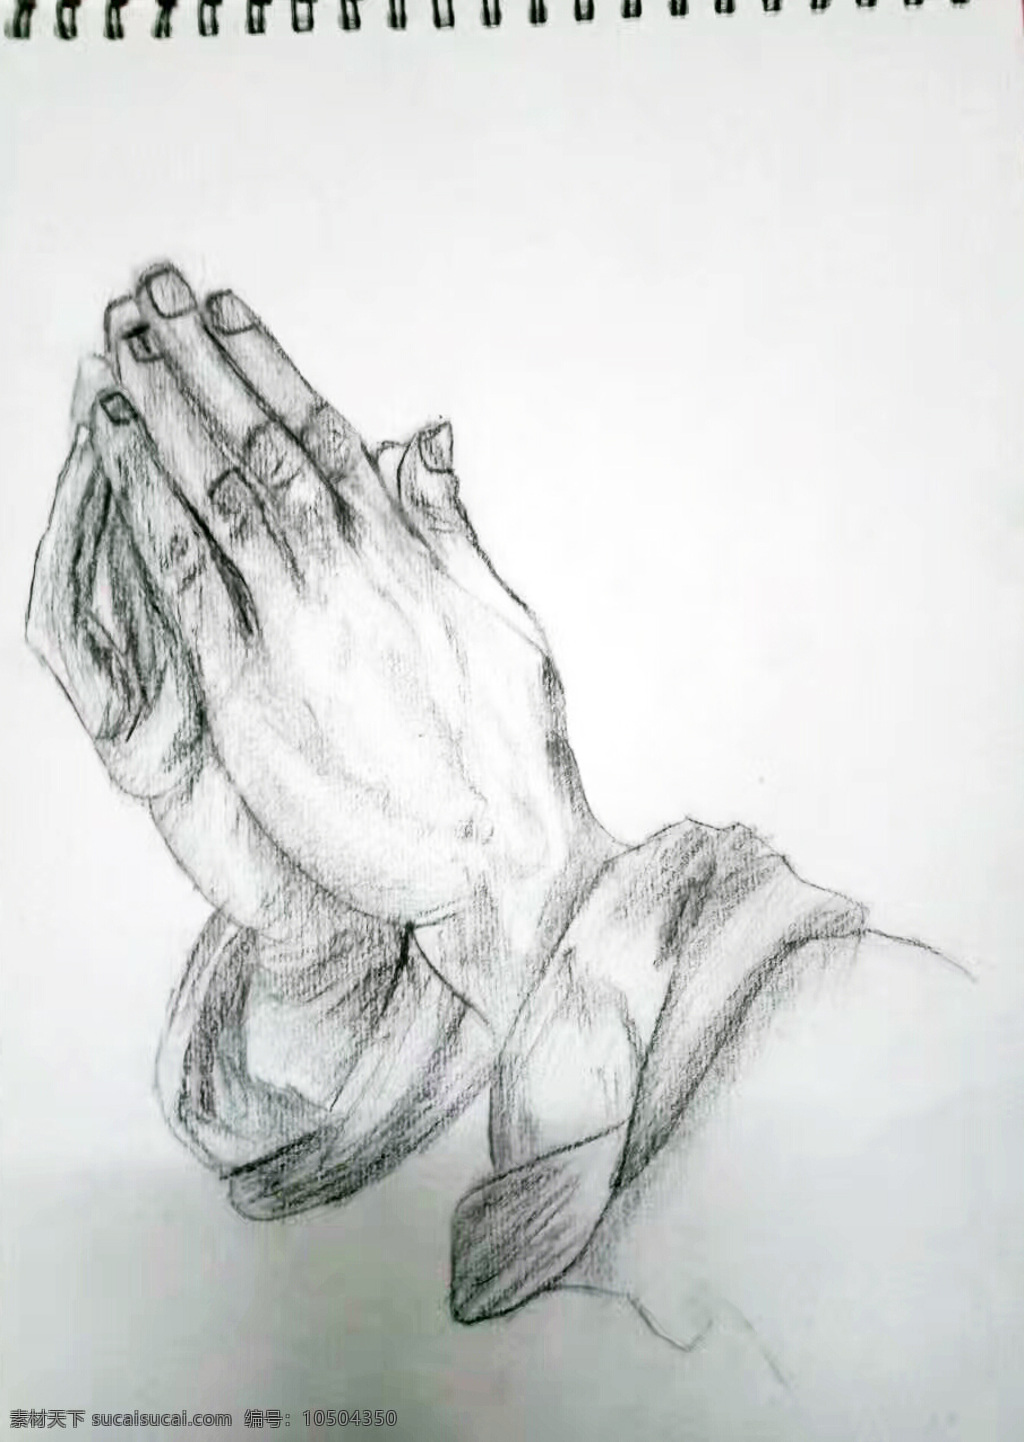 祈祷的手 祈祷 手 双手合十 素描 原创